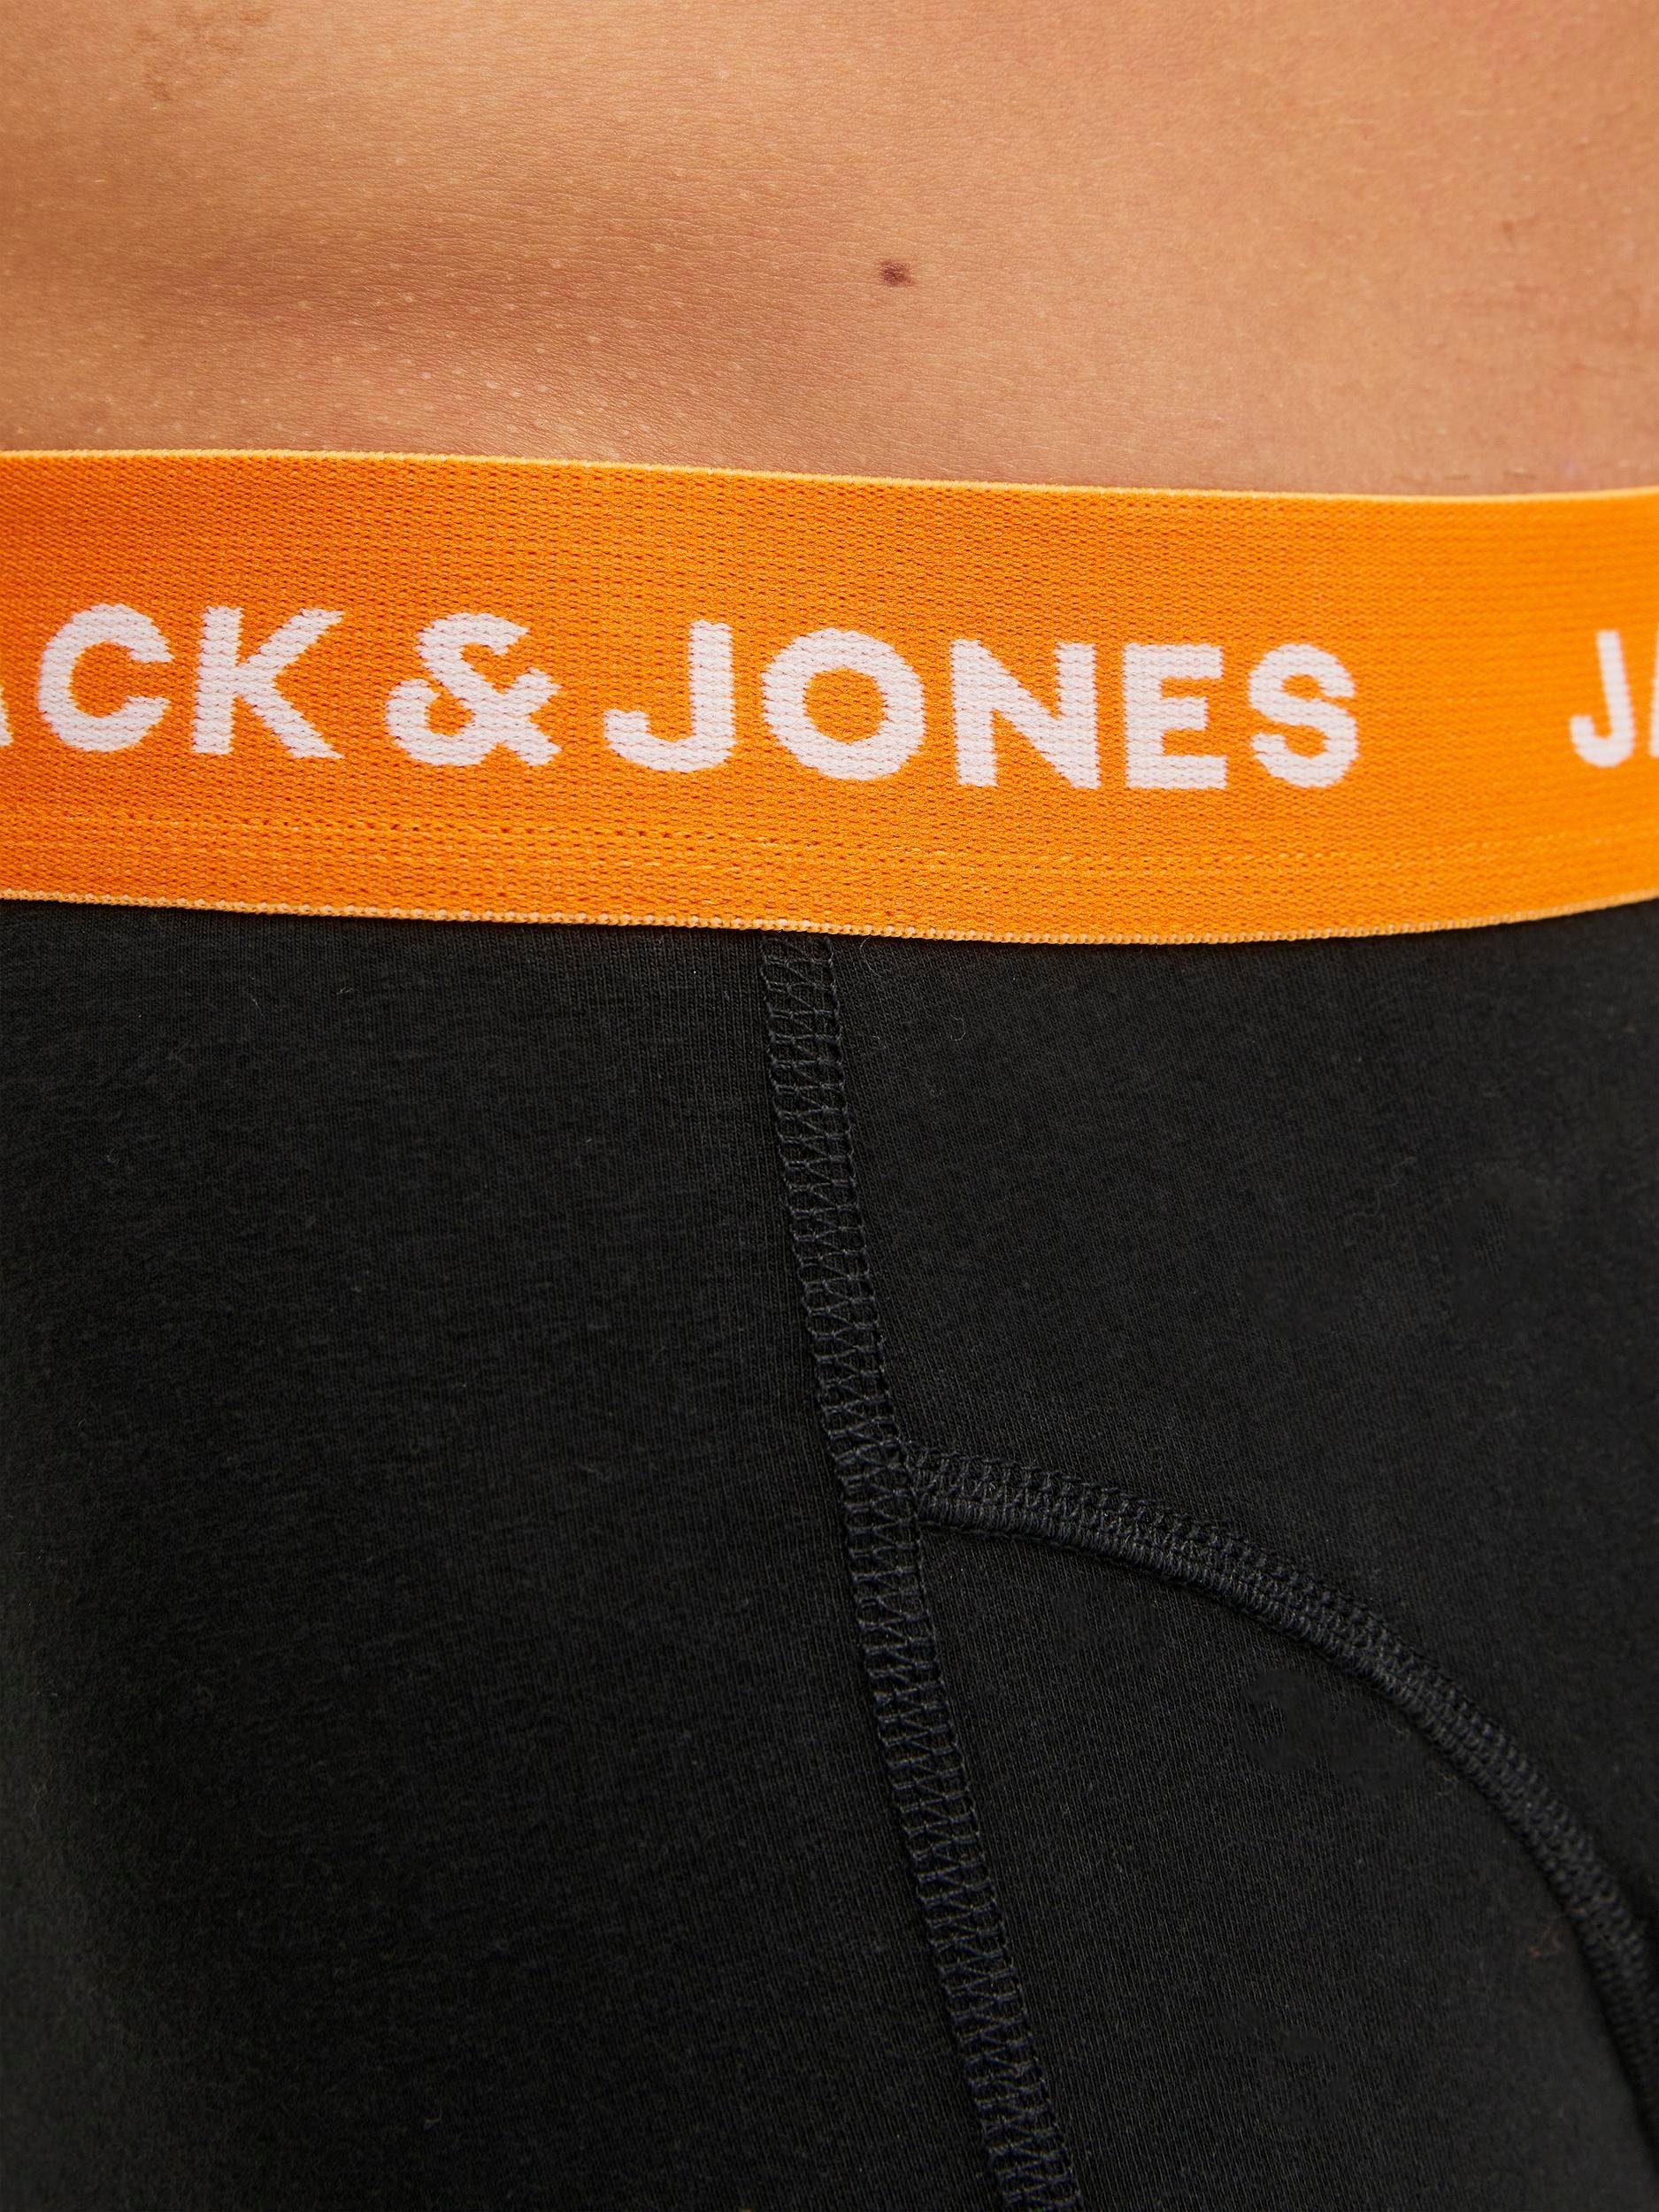 Jones & NOOS Jack Trunk TRUNKS / black JACGAB (Packung, 3 dark green 3-St) PACK